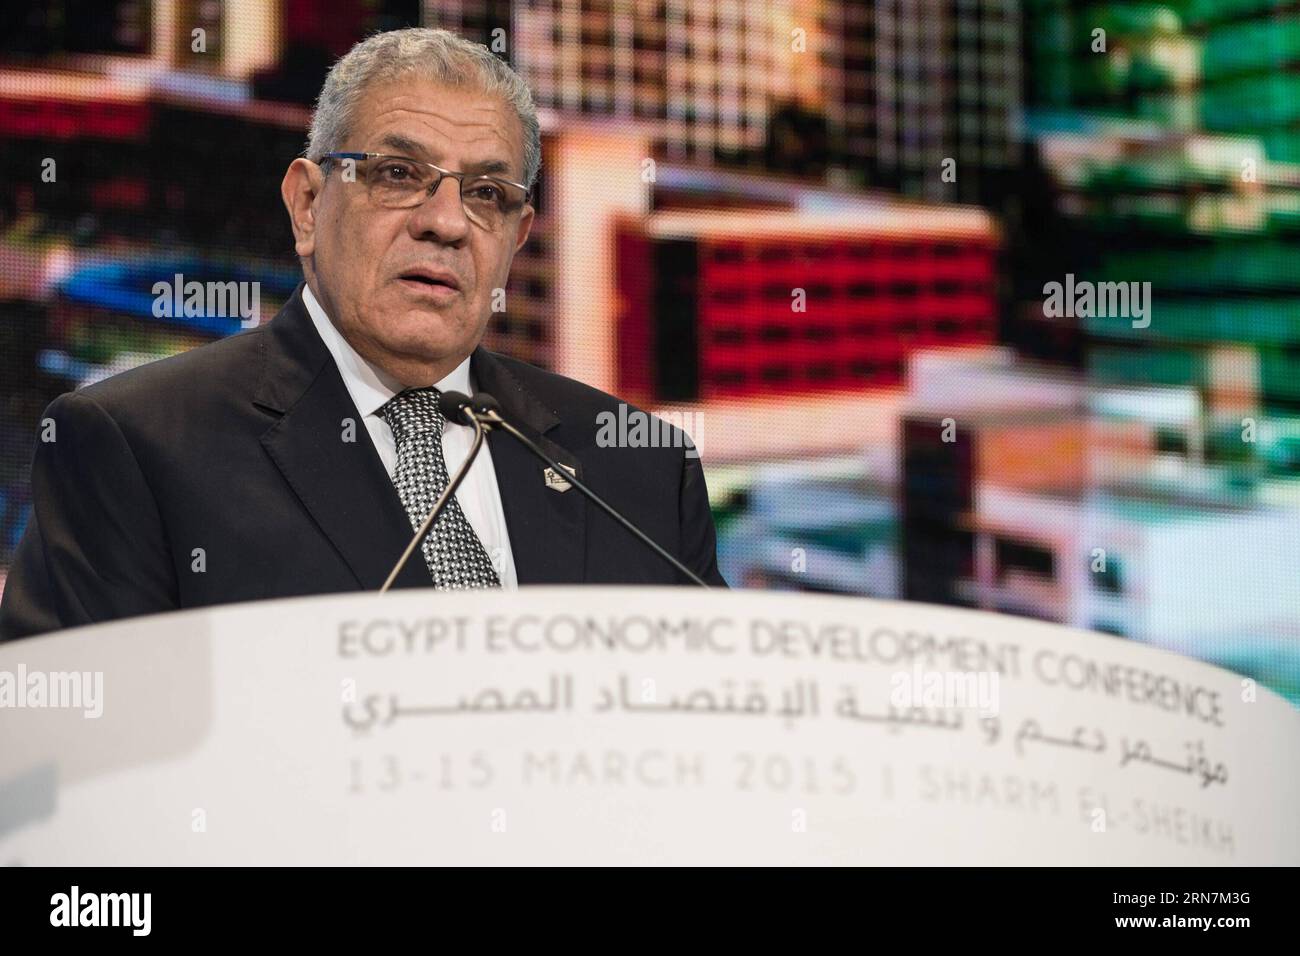 (150912) -- KAIRO, 12. September 2015 -- Aktenfoto vom 14. März 2015 zeigt den yptischen Premierminister Ibrahim Mahlab vor der ägyptischen Wirtschaftsentwicklungskonferenz in Scharm el-Scheich. Der ägyptische Präsident Abdel-Fattah al-Sisi hat Spet angenommen. 12, 2015 der Kabinettretschluss unter der Leitung von Premierminister Ibrahim Mahlab, laut einer Erklärung des Präsidentenbüros. ÄGYPTEN-POLITIK-KABINETT-RESIGNATION-DATEI PanxChaoyue PUBLICATIONxNOTxINxCHN Kairo September 12 2015 Datei Foto aufgenommen AM 14. März 2015 zeigt Premierminister Ibrahim Mahlab vor der ägyptischen Wirtschaftsentwicklungskonferenz in S Stockfoto